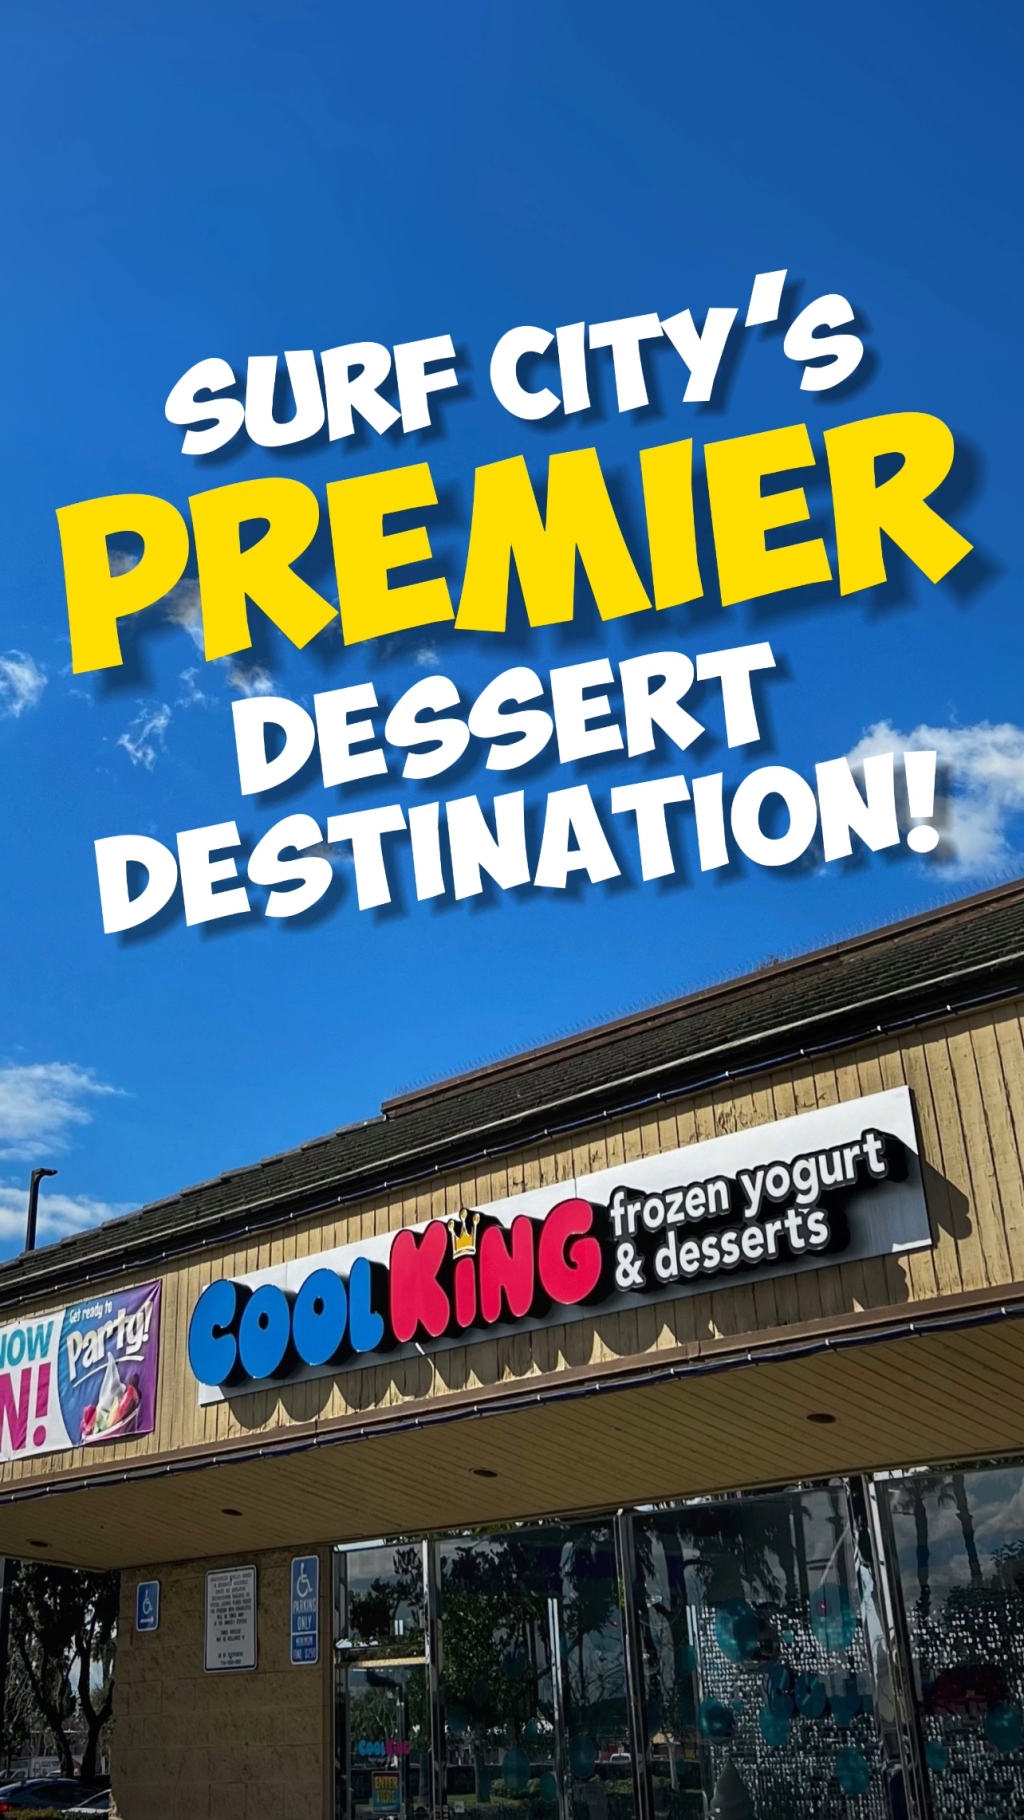 Cool King® “Surf City’s Premier Dessert Destination” Advertisement & Post Dialogue